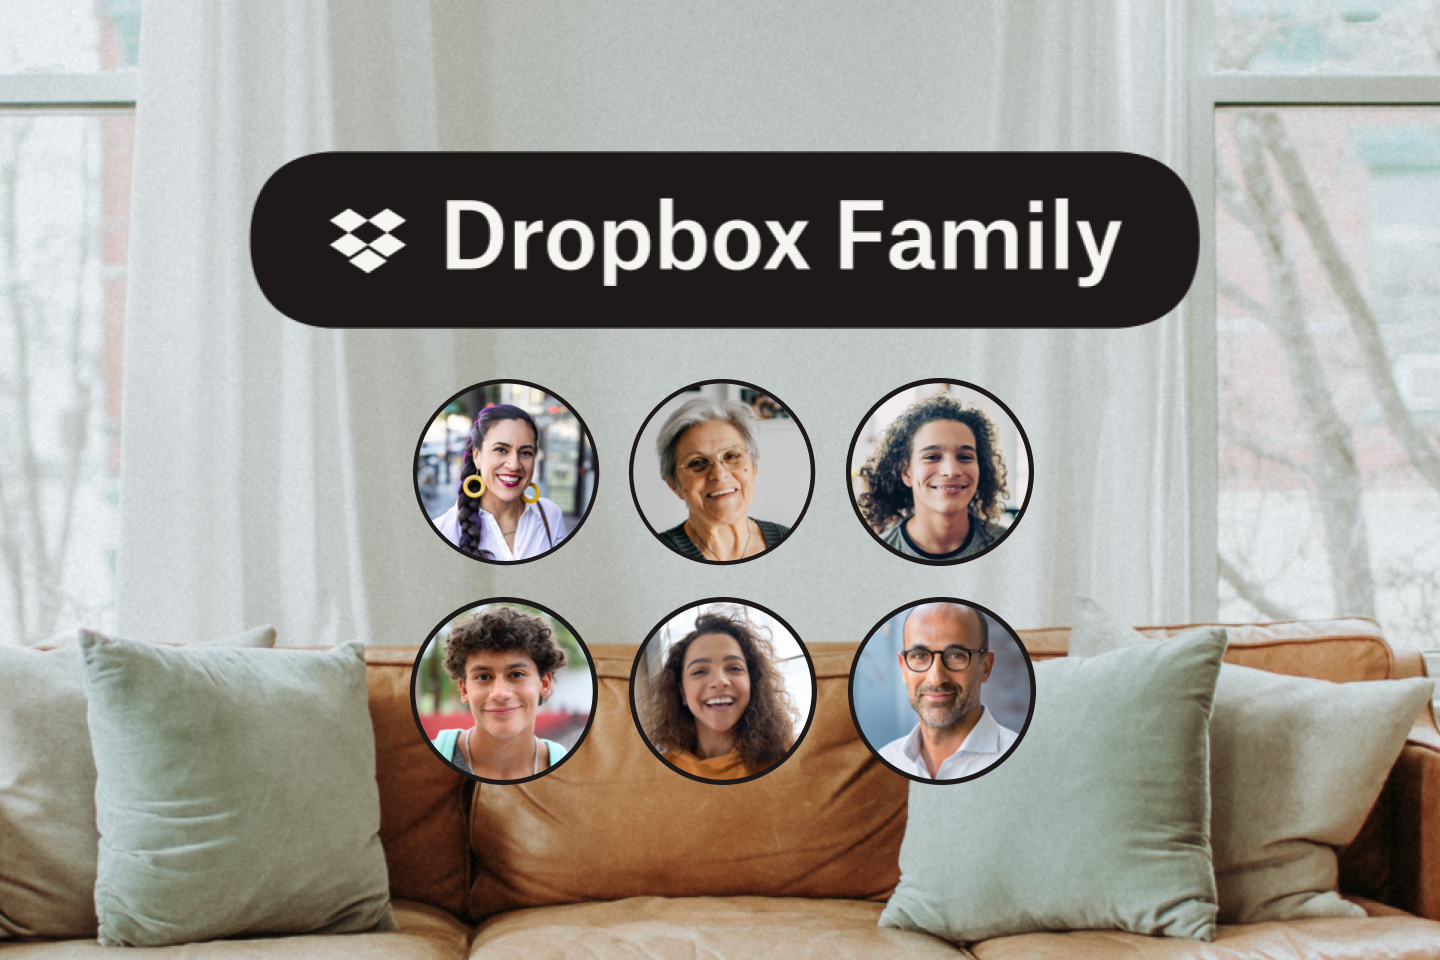 Un divano in pelle, 6 icone con immagini dei membri della famiglia e il logo Dropbox